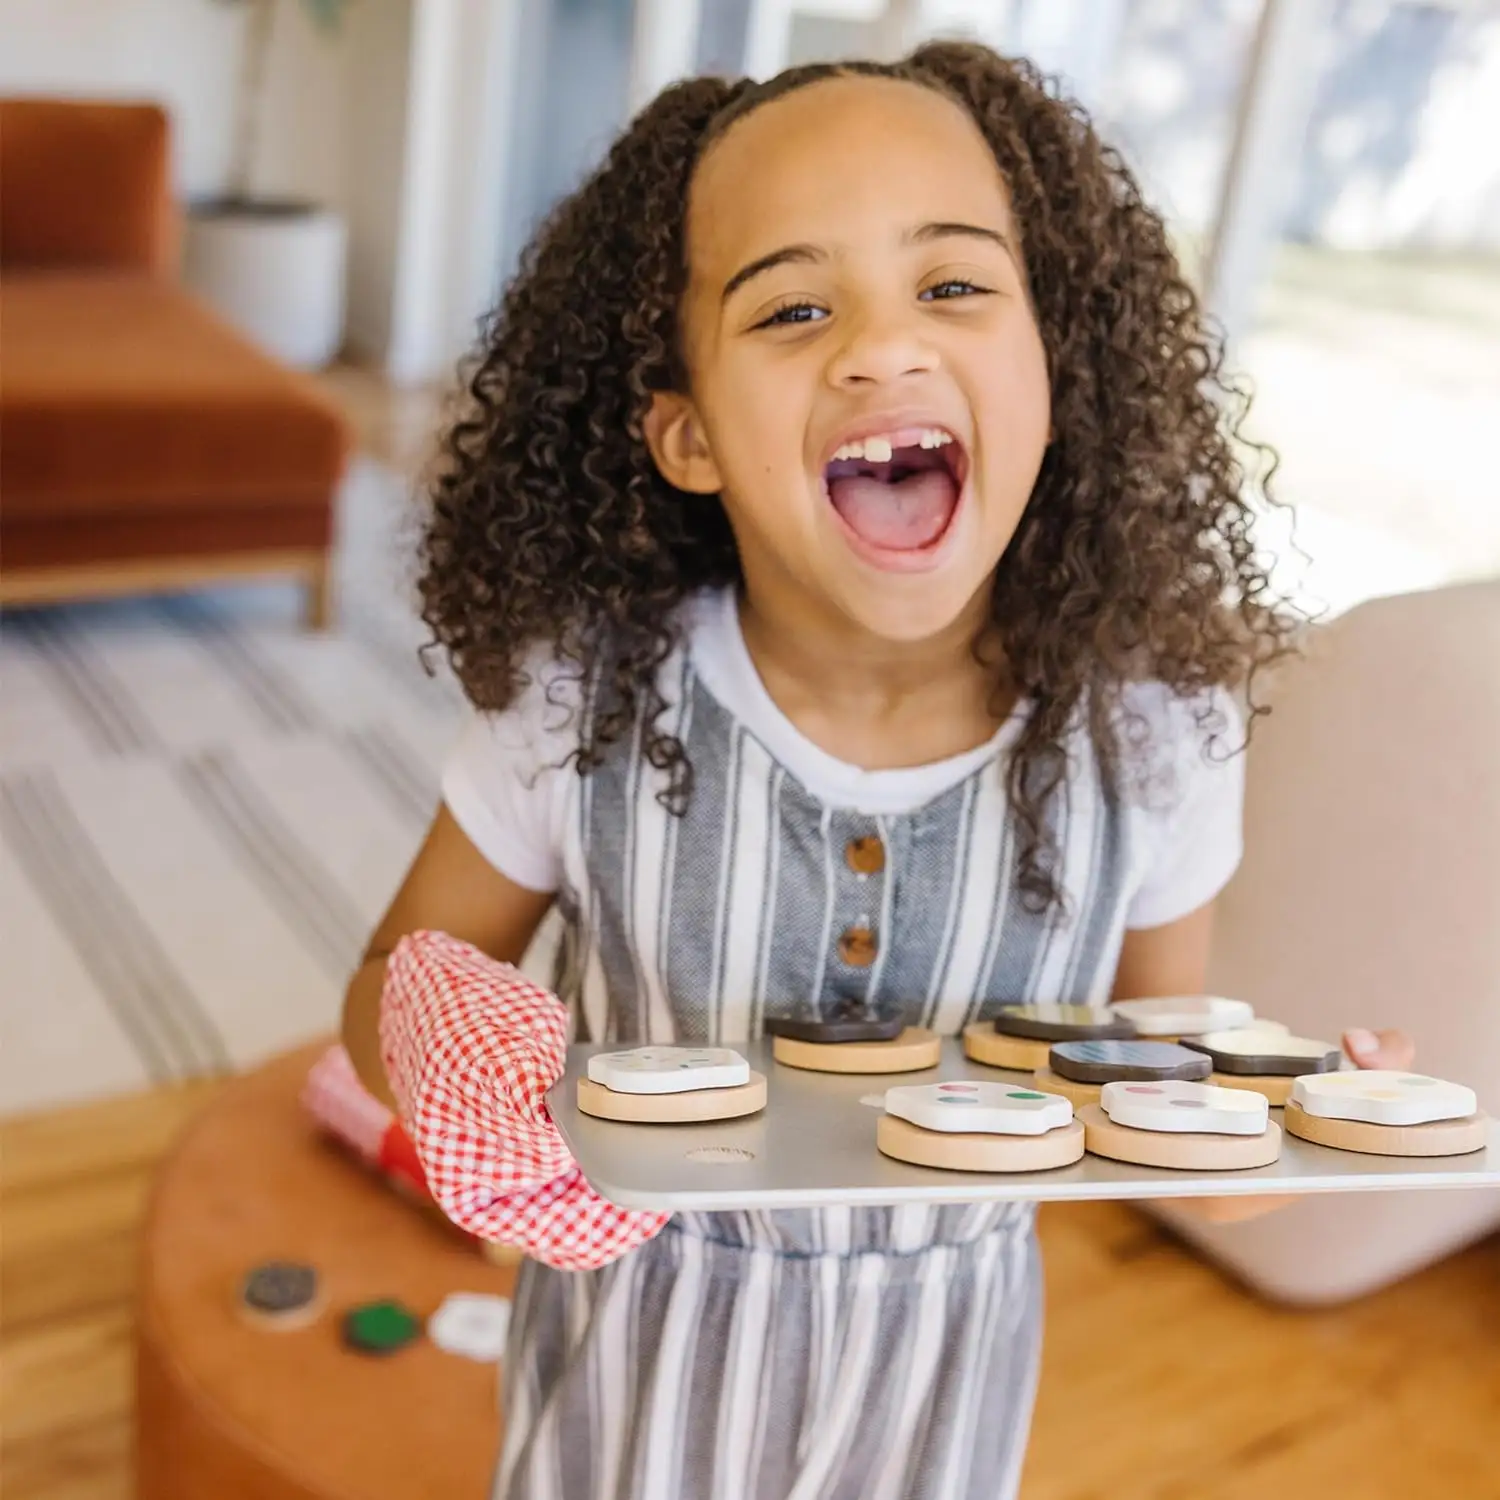 स्लाइस और बेक लकड़ी की कुकी खेल-दिखावा कुकीज़ और बेकिंग शीट, 3 + वर्ष के बच्चों के लिए खिलौना बेकिंग सेट